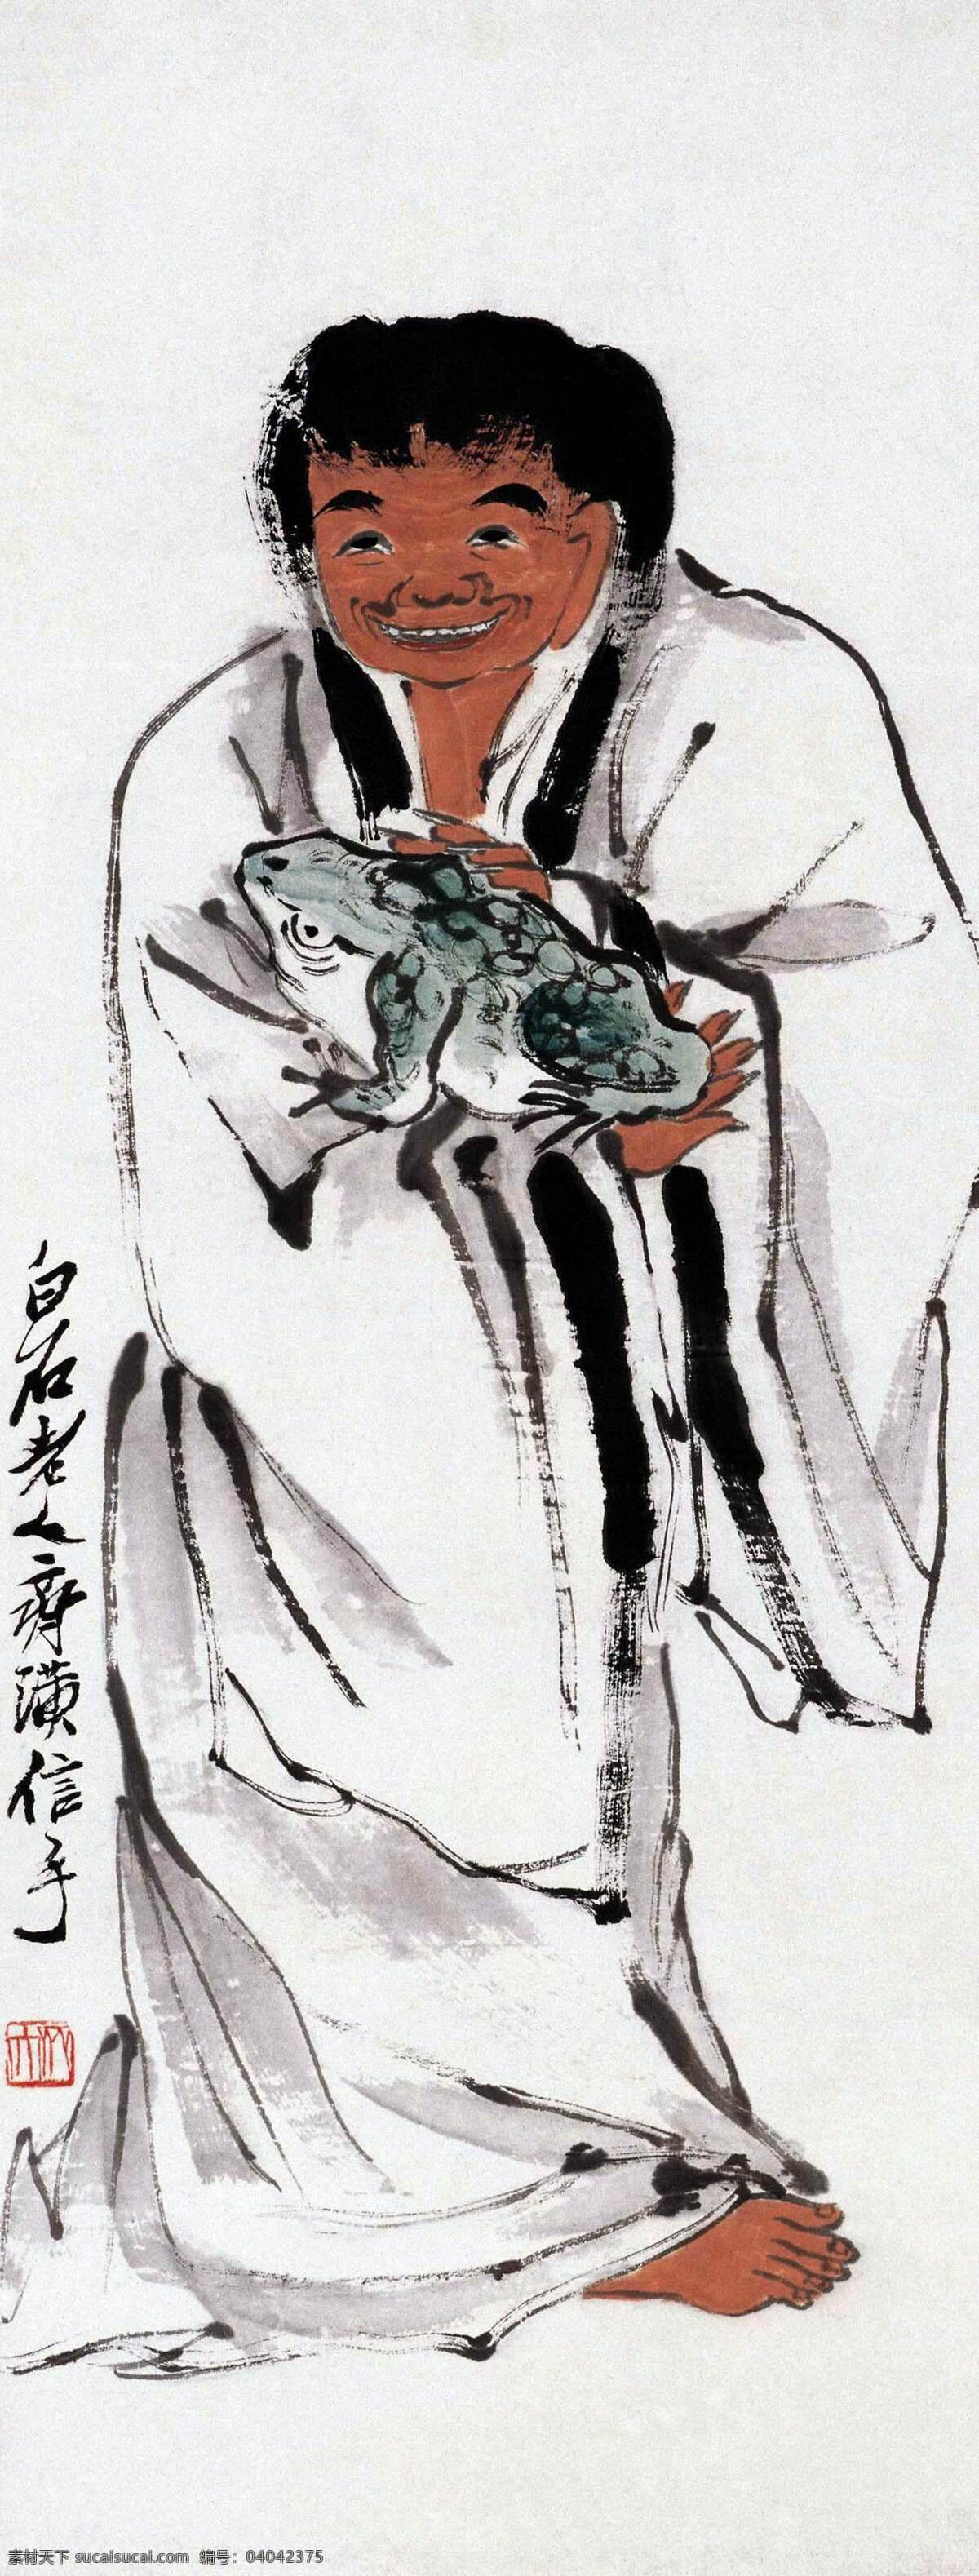 道教 国画 绘画书法 齐白石 人物 文化艺术 赤脚 大仙 图 设计素材 模板下载 赤脚大仙